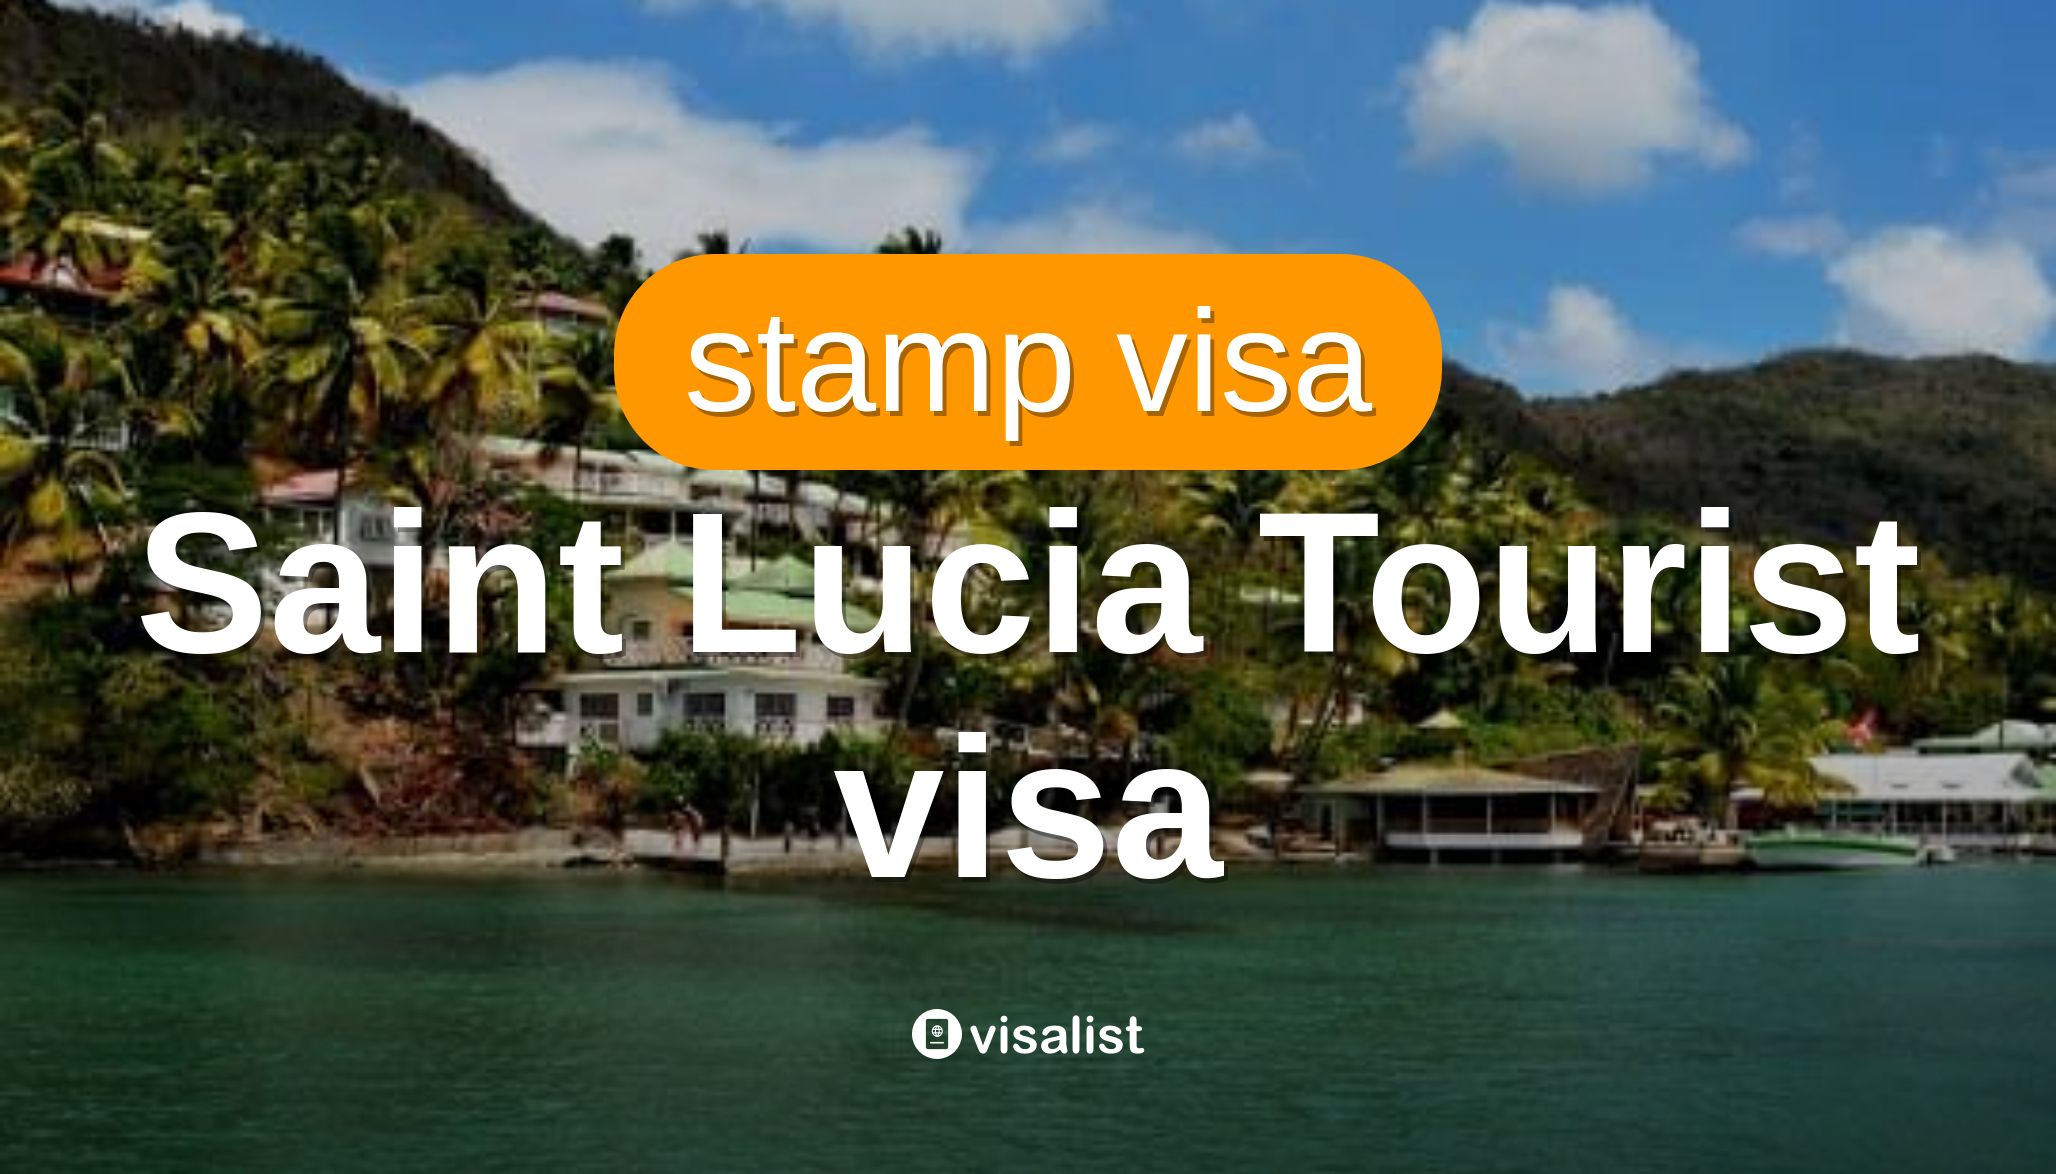 st lucia tourist visa requirements